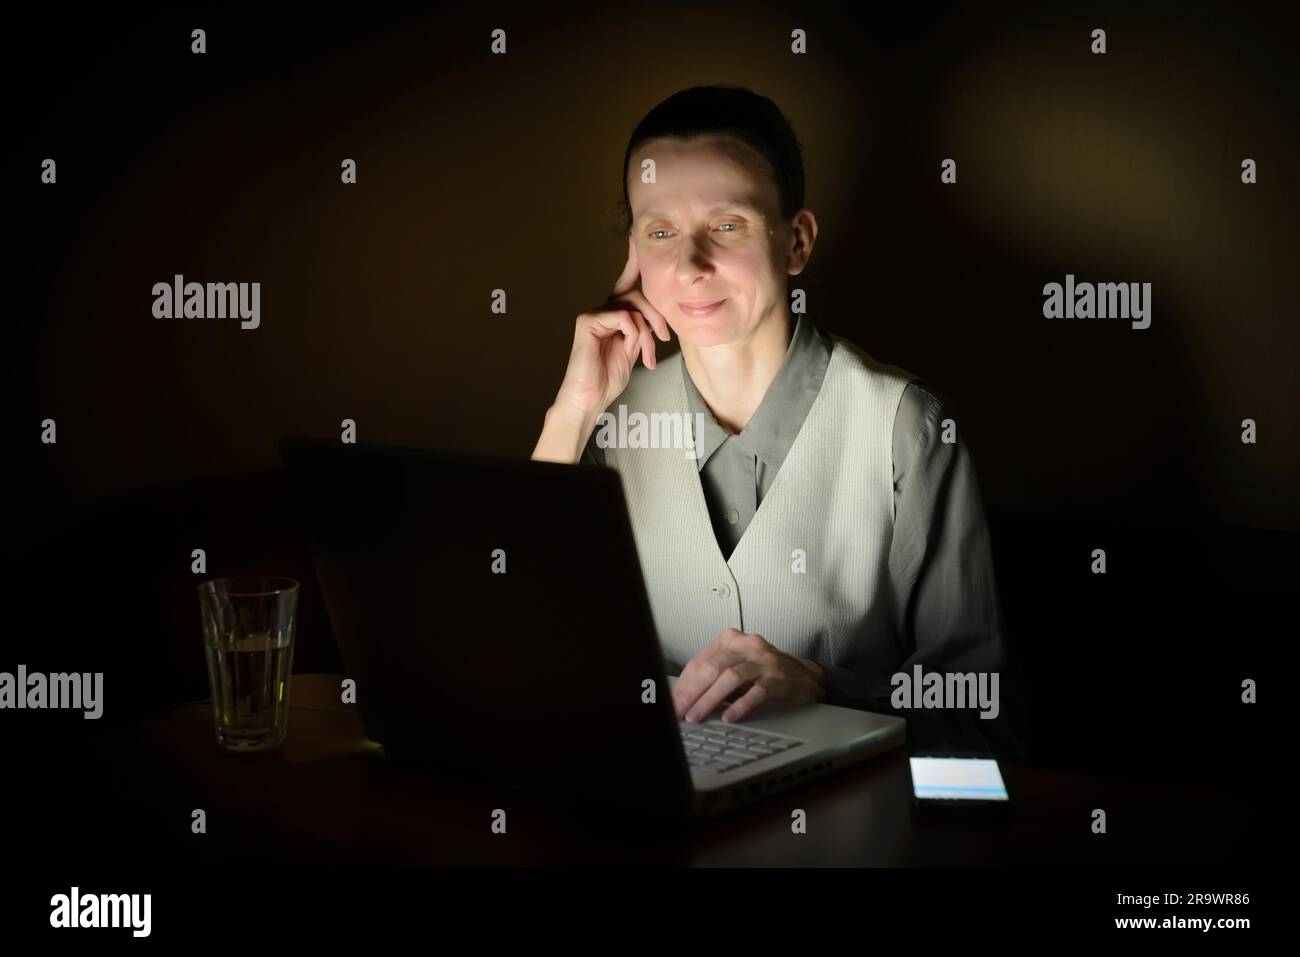 Una donna d'affari sta usando un computer in una stanza buia. Il suo volto è illuminato dalla luce del monitor lcd Foto Stock